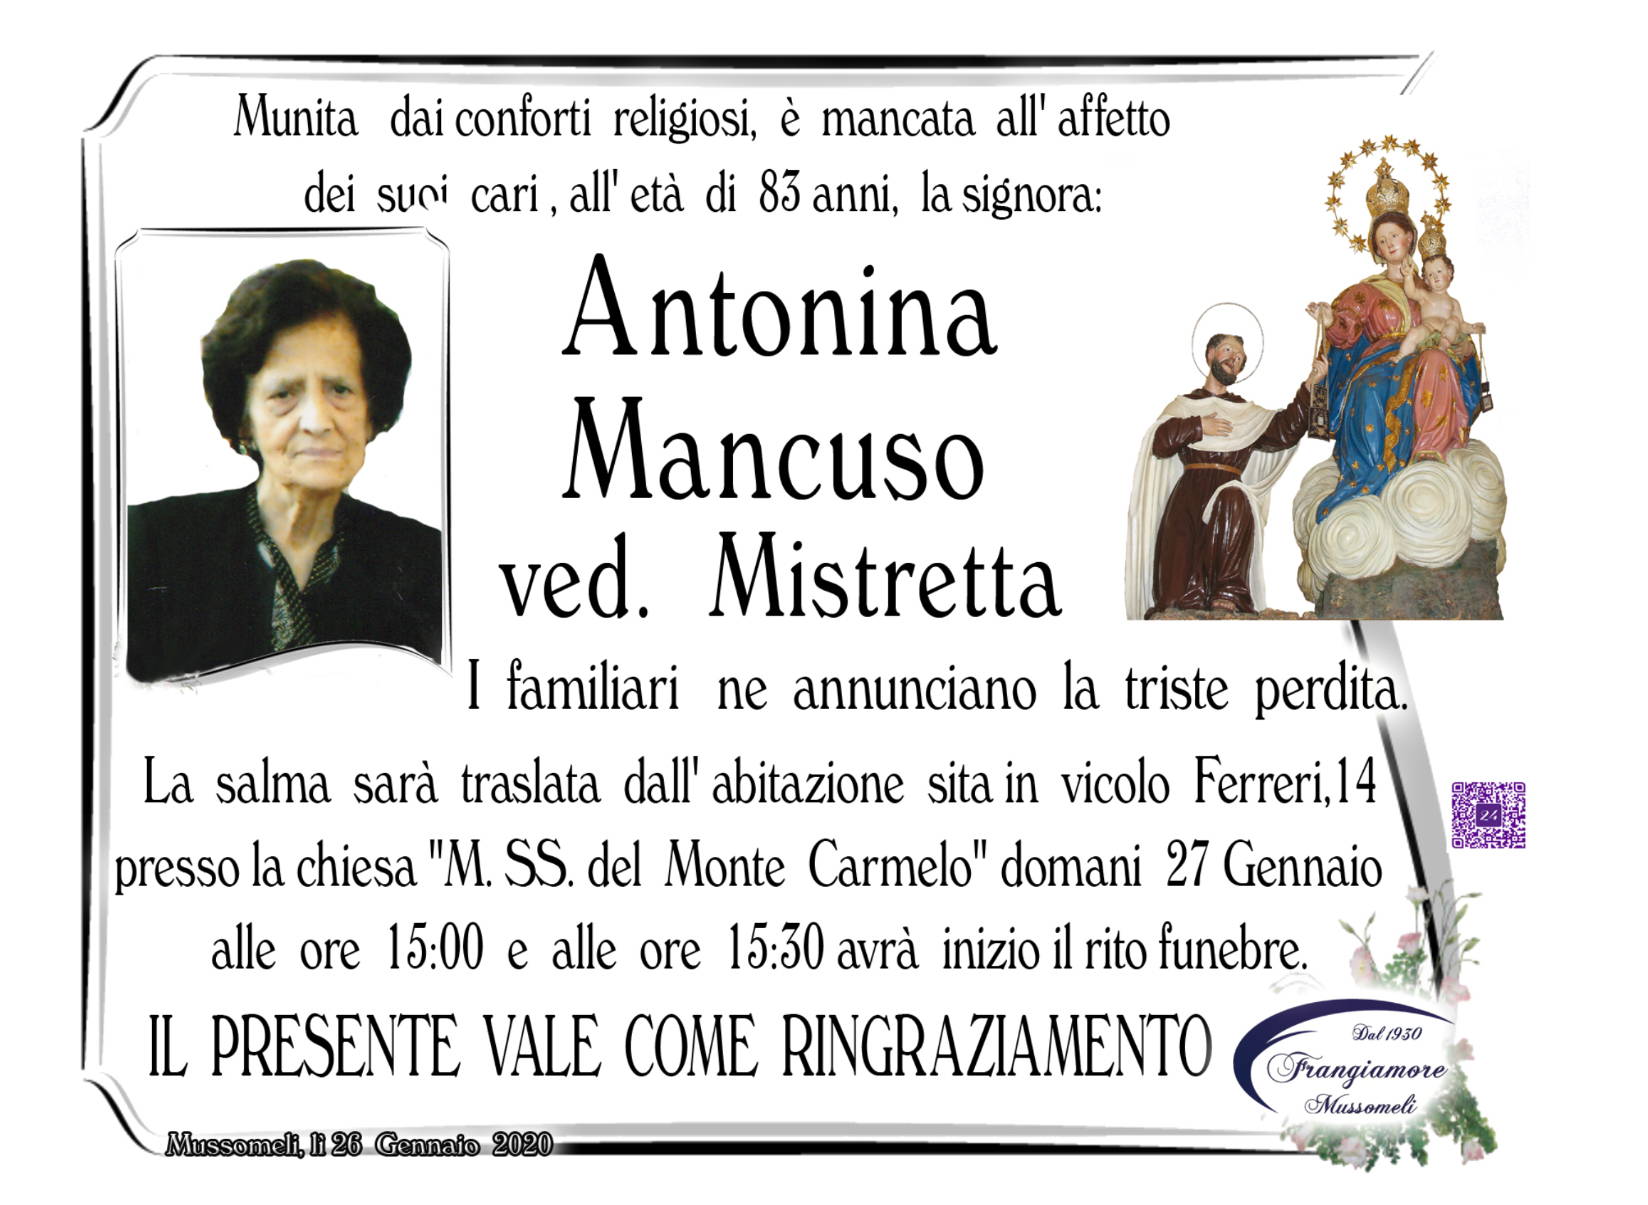 Antonina Mancuso